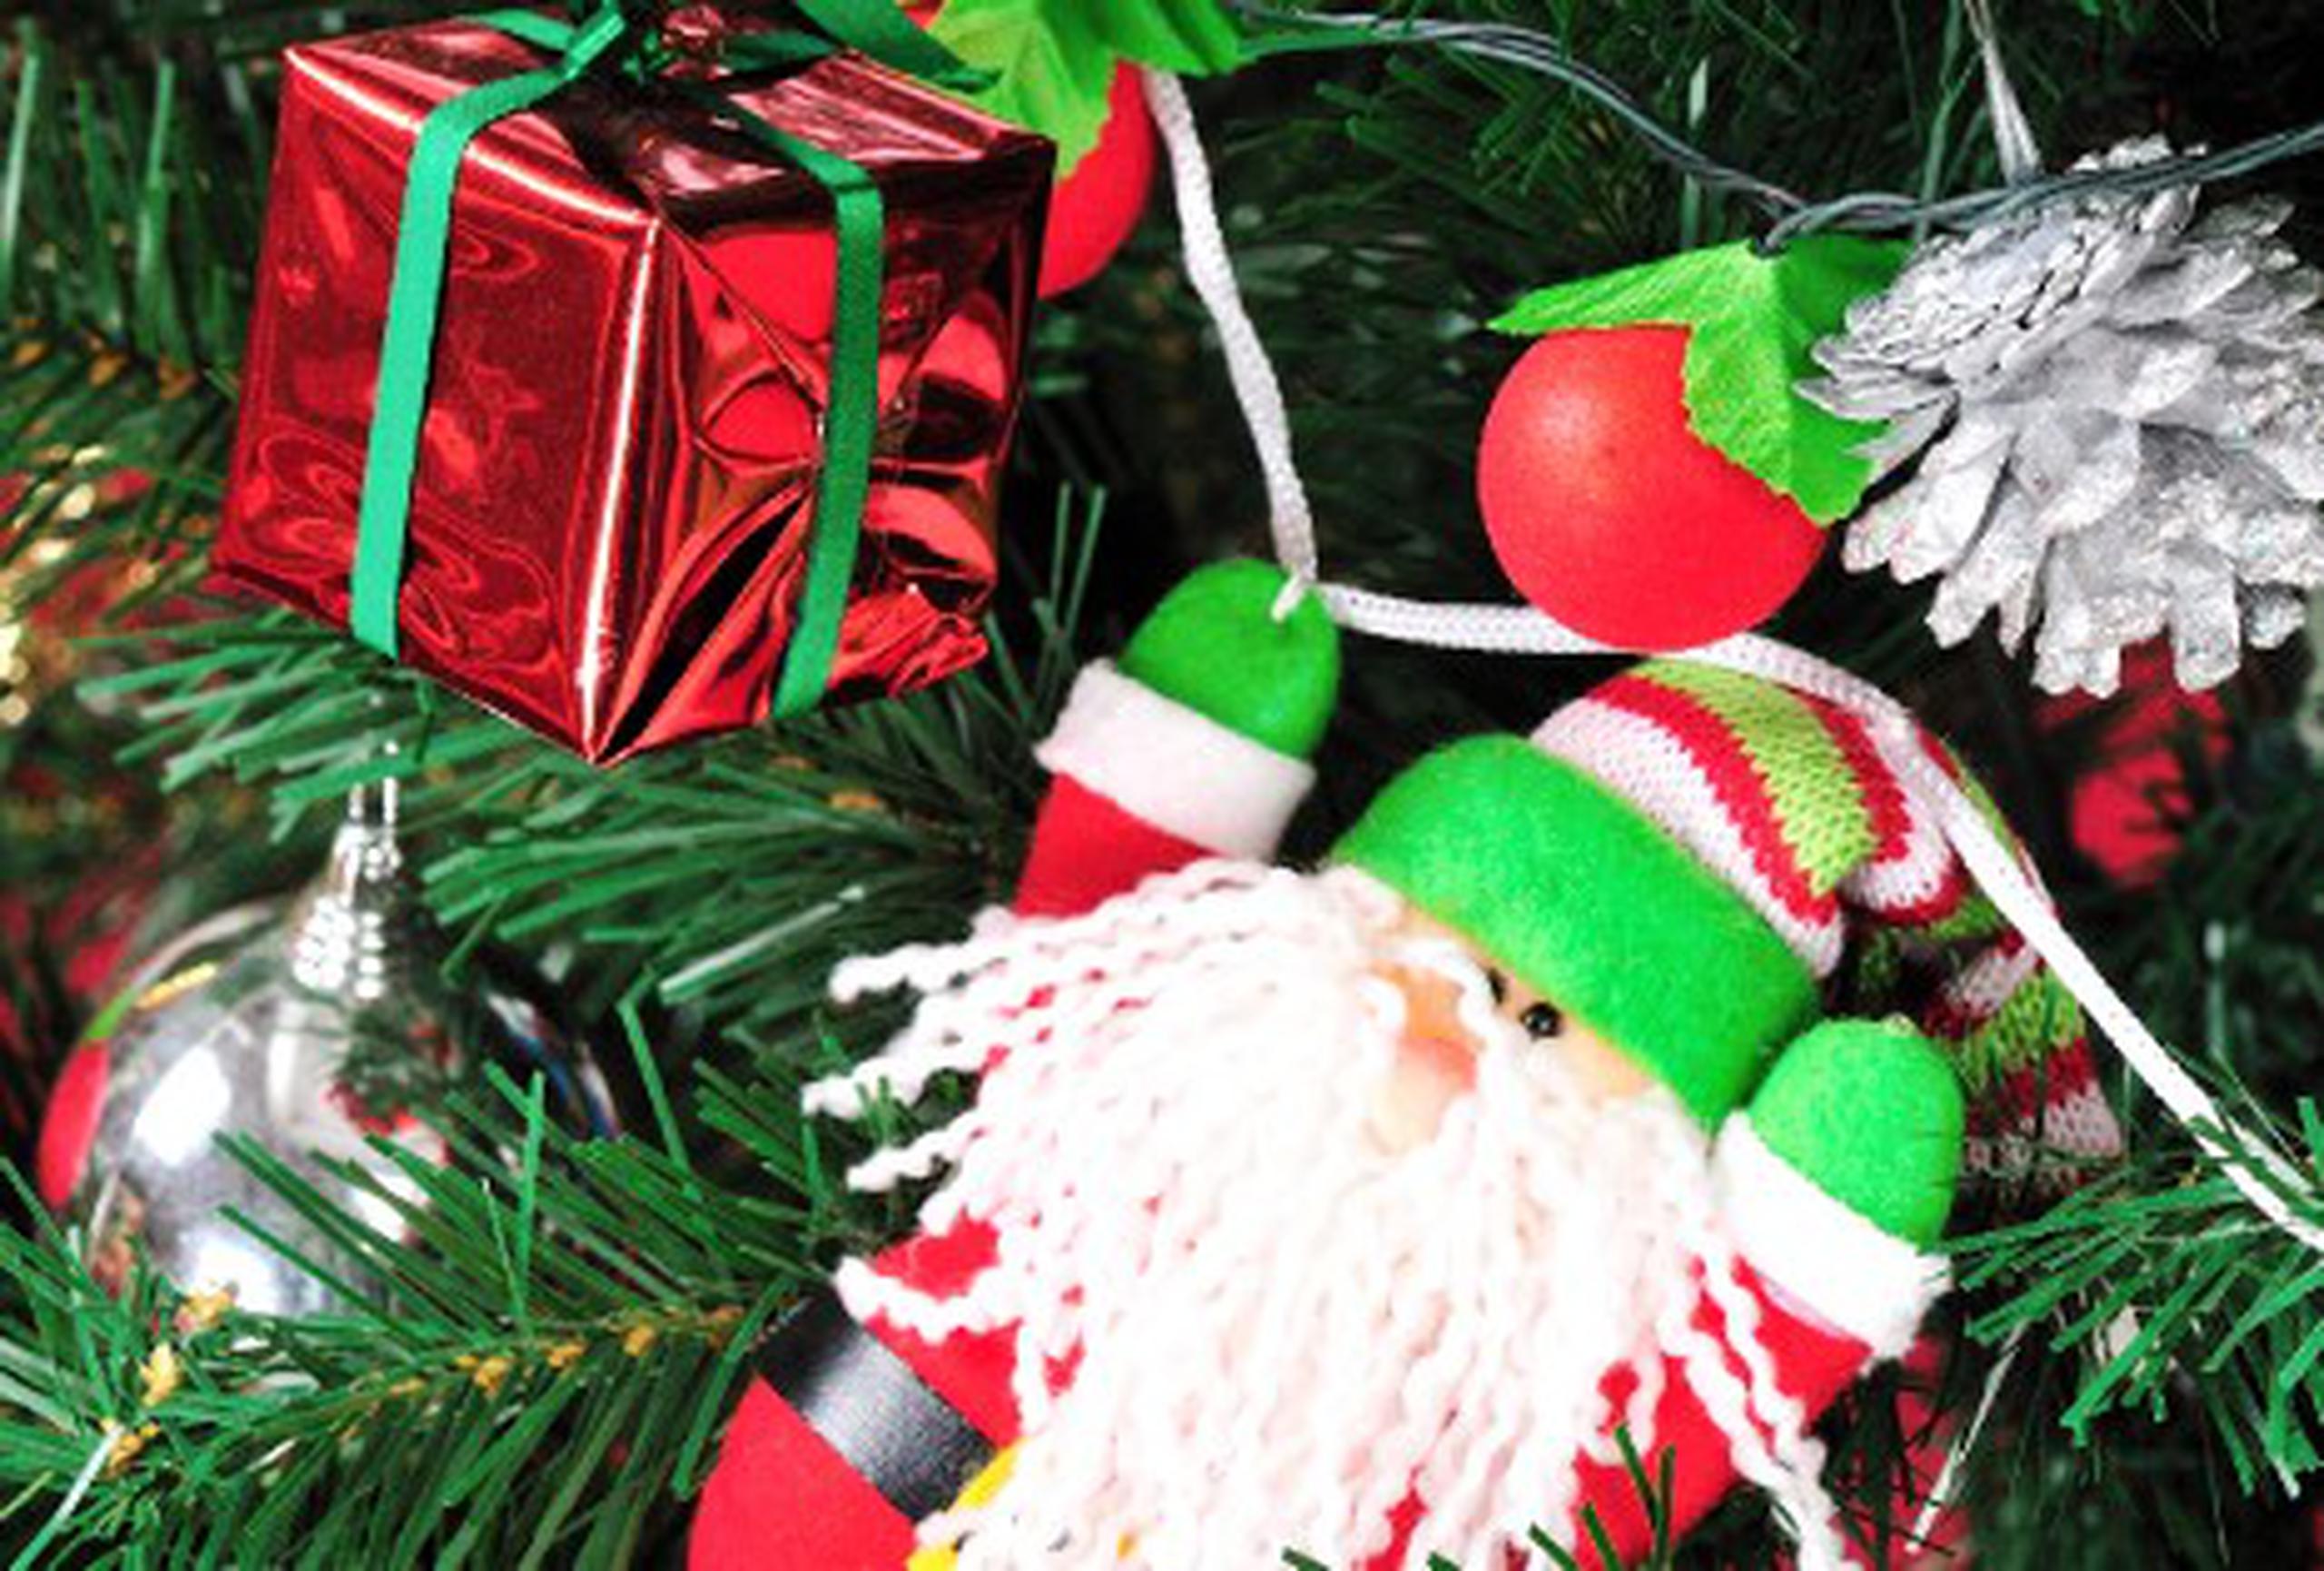 Se recomienda utilizar adornos grandes, como cajas de regalos, conos navideños, muñecos de <i>Santa Claus&nbsp;</i>de diferentes tamaños, espigas, entre otros accesorios.